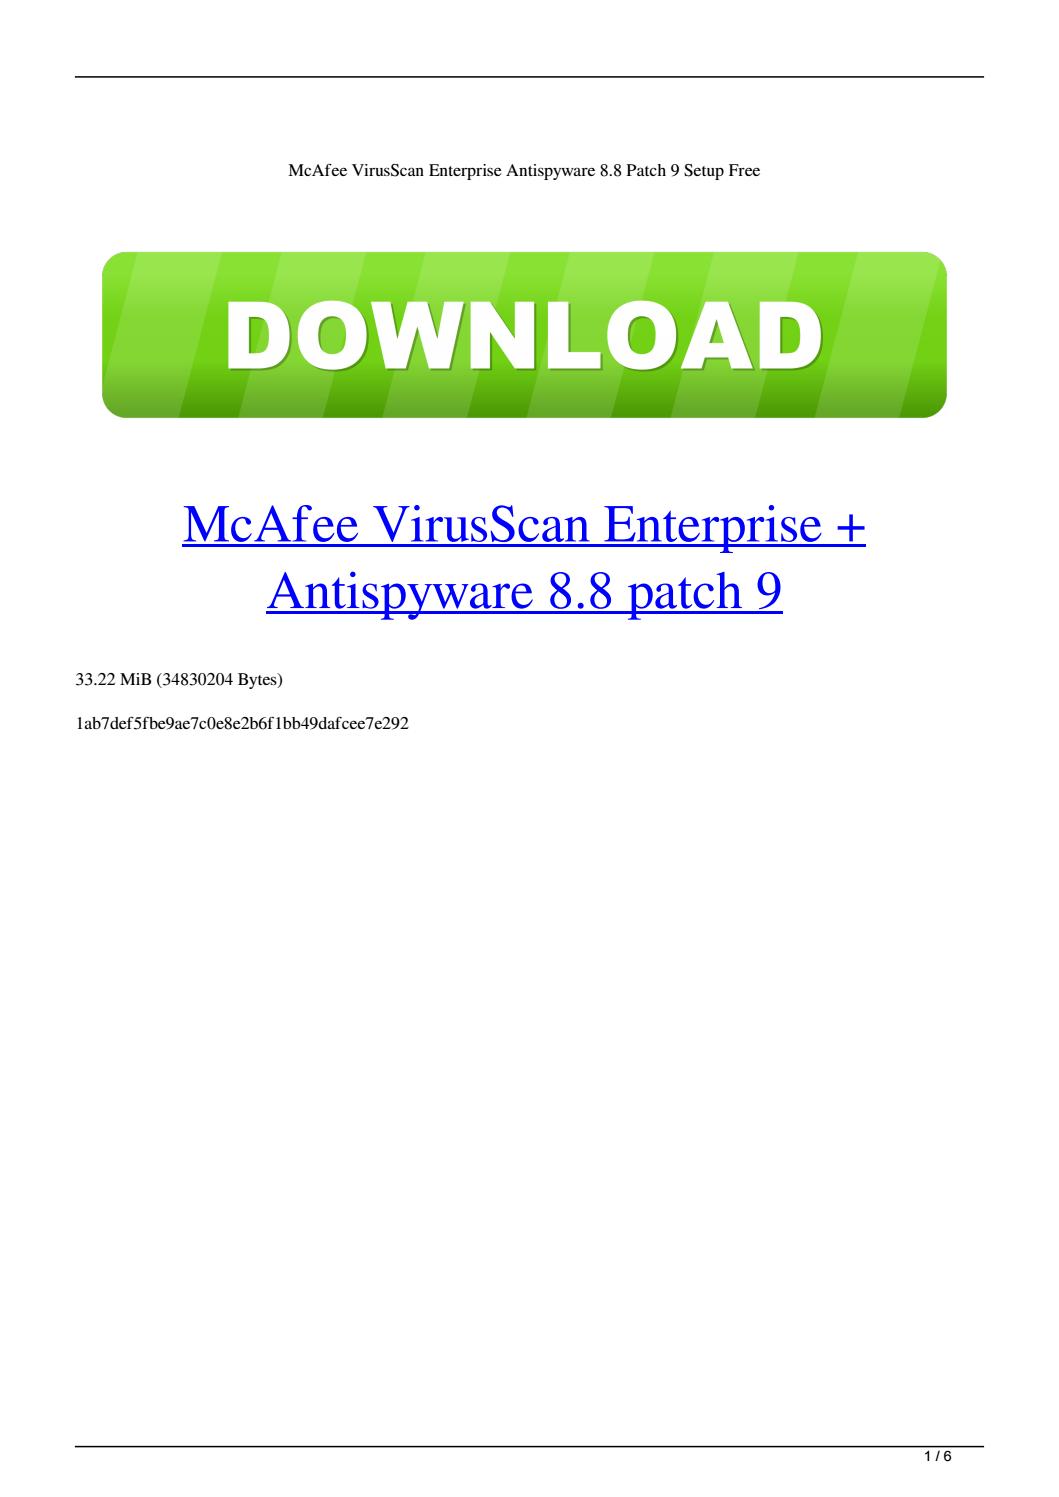 Mcafee virusscan enterprise 8.8 patch 13